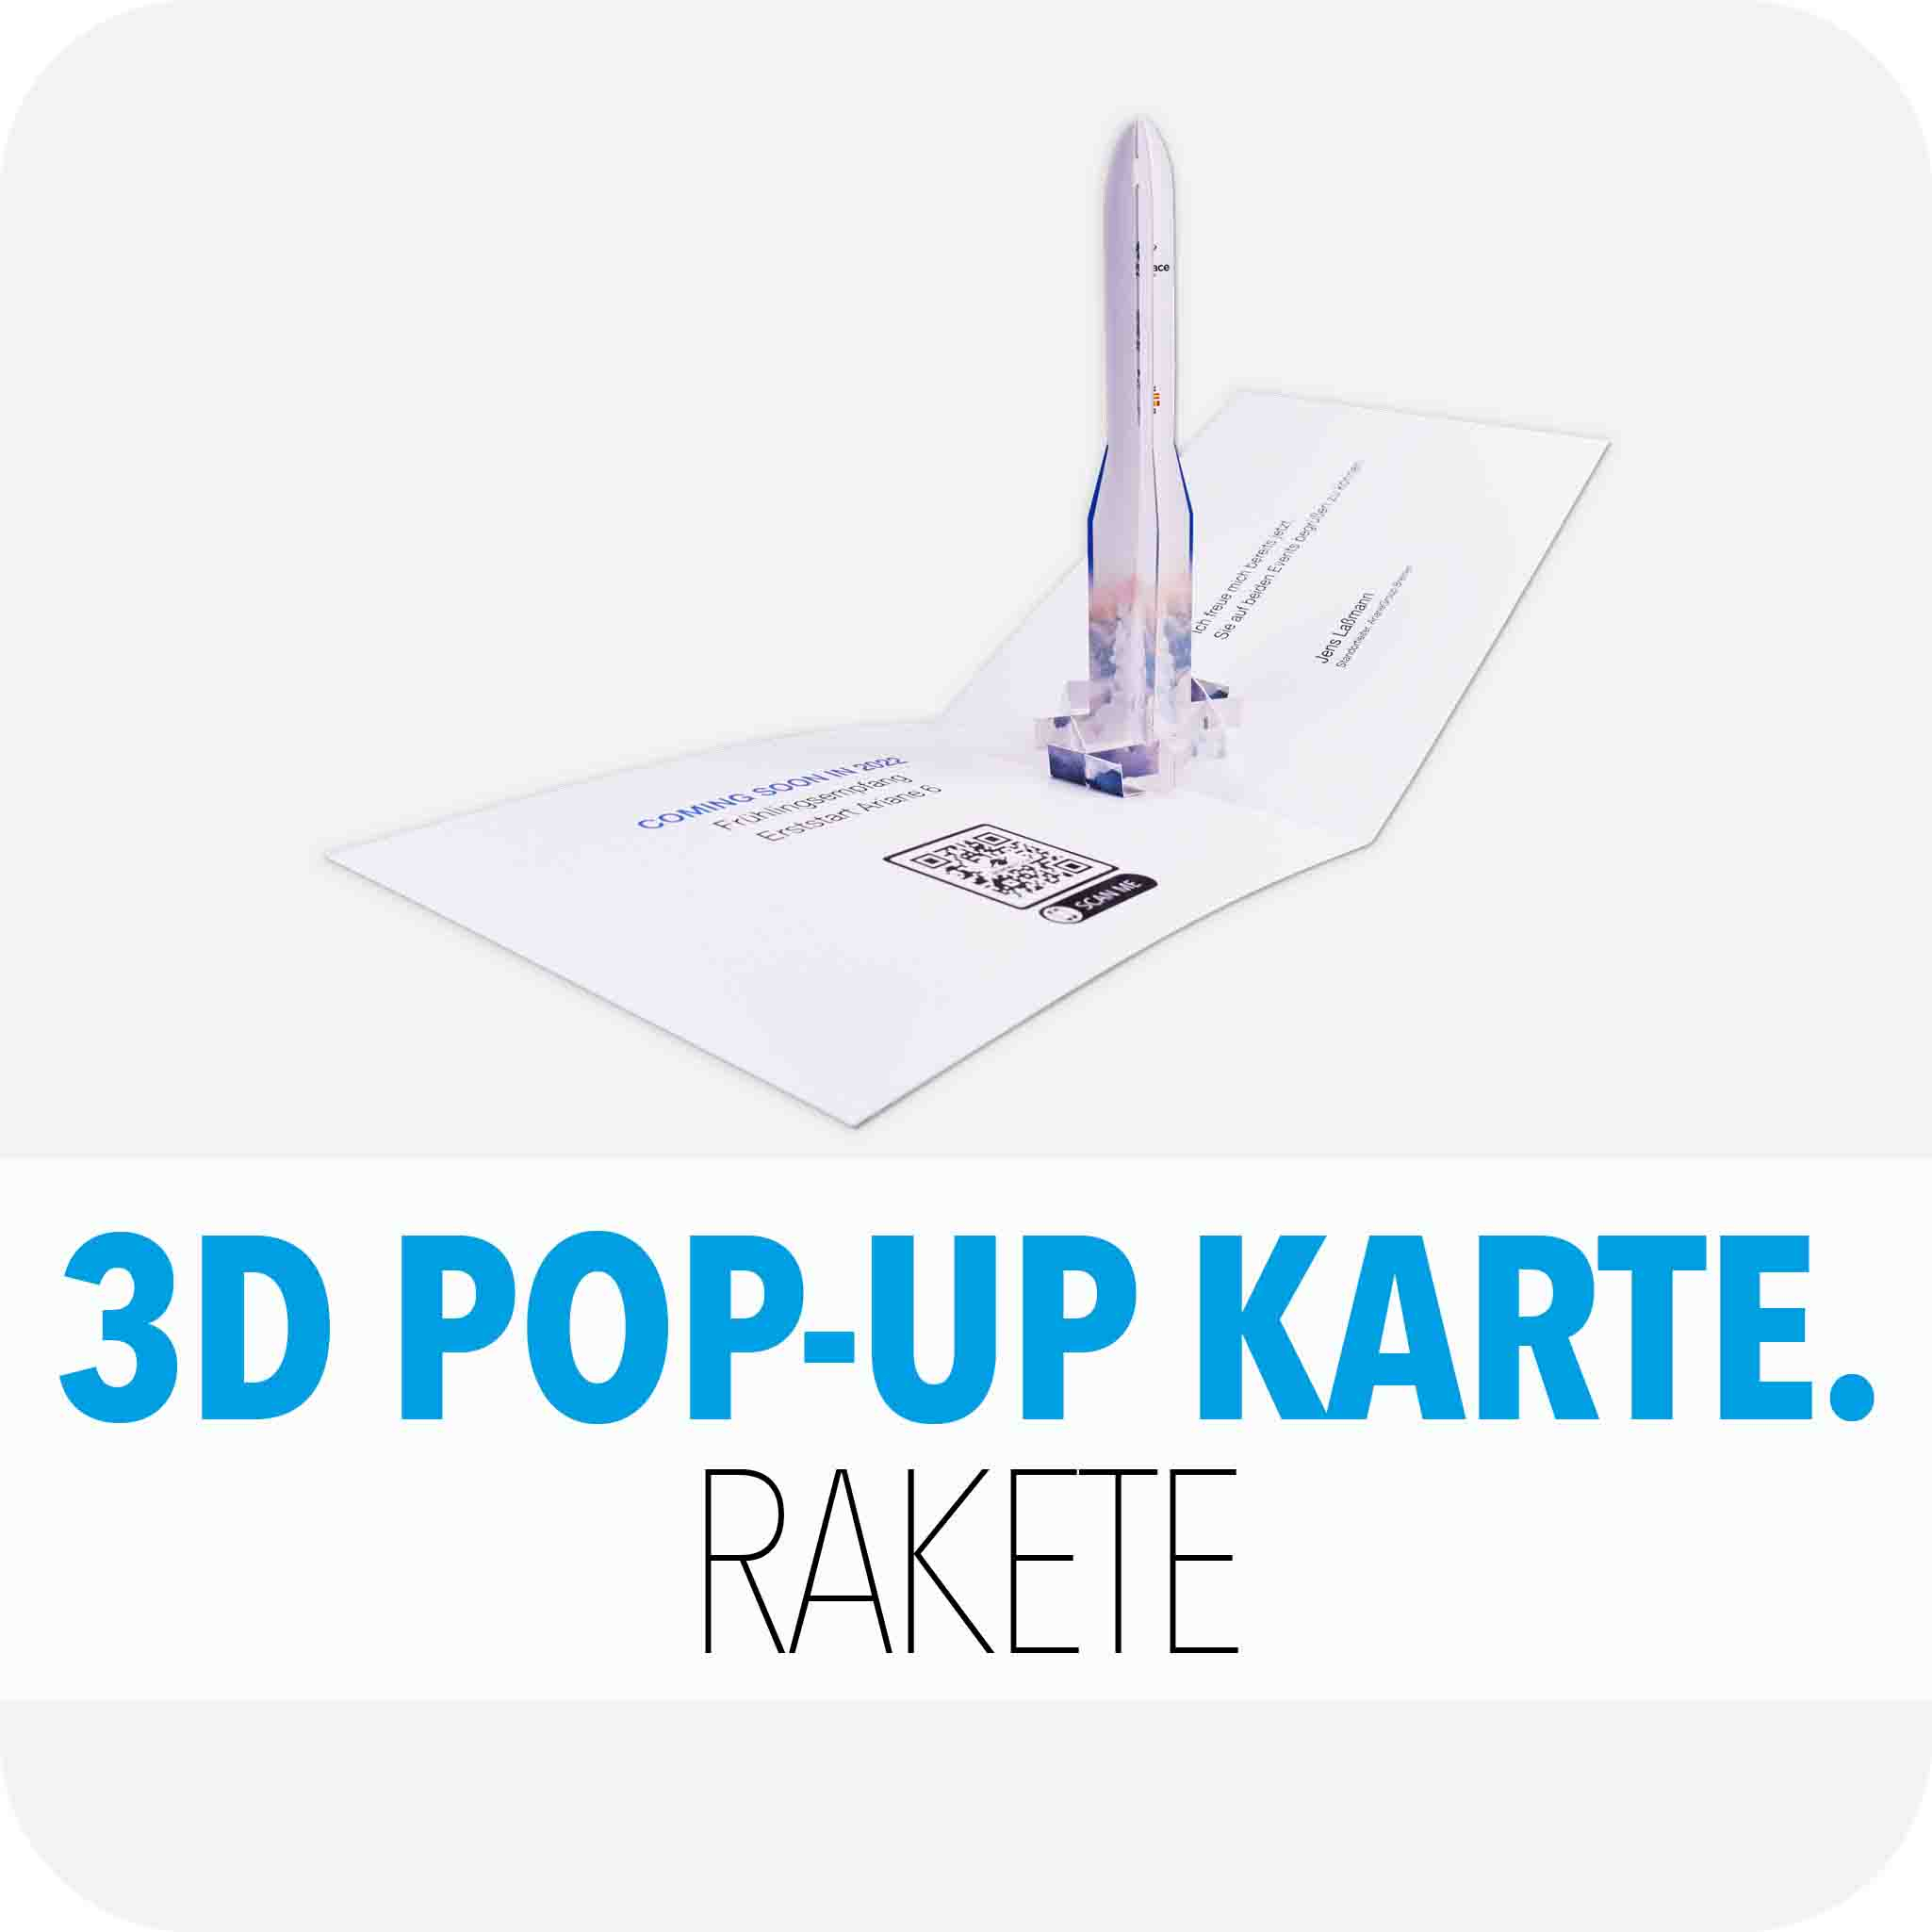 3D Pop-Up Karte Rakete